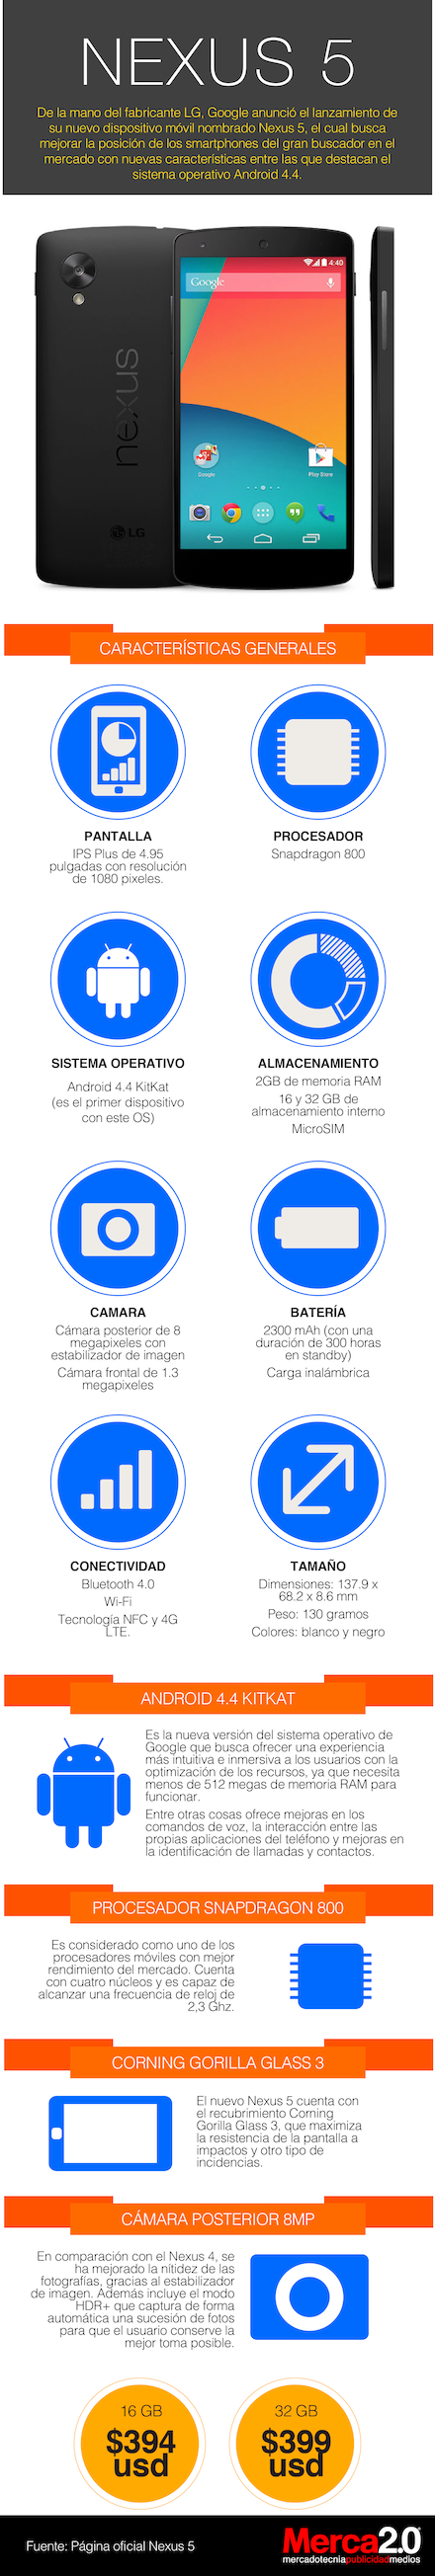 Infographic Nexus 5